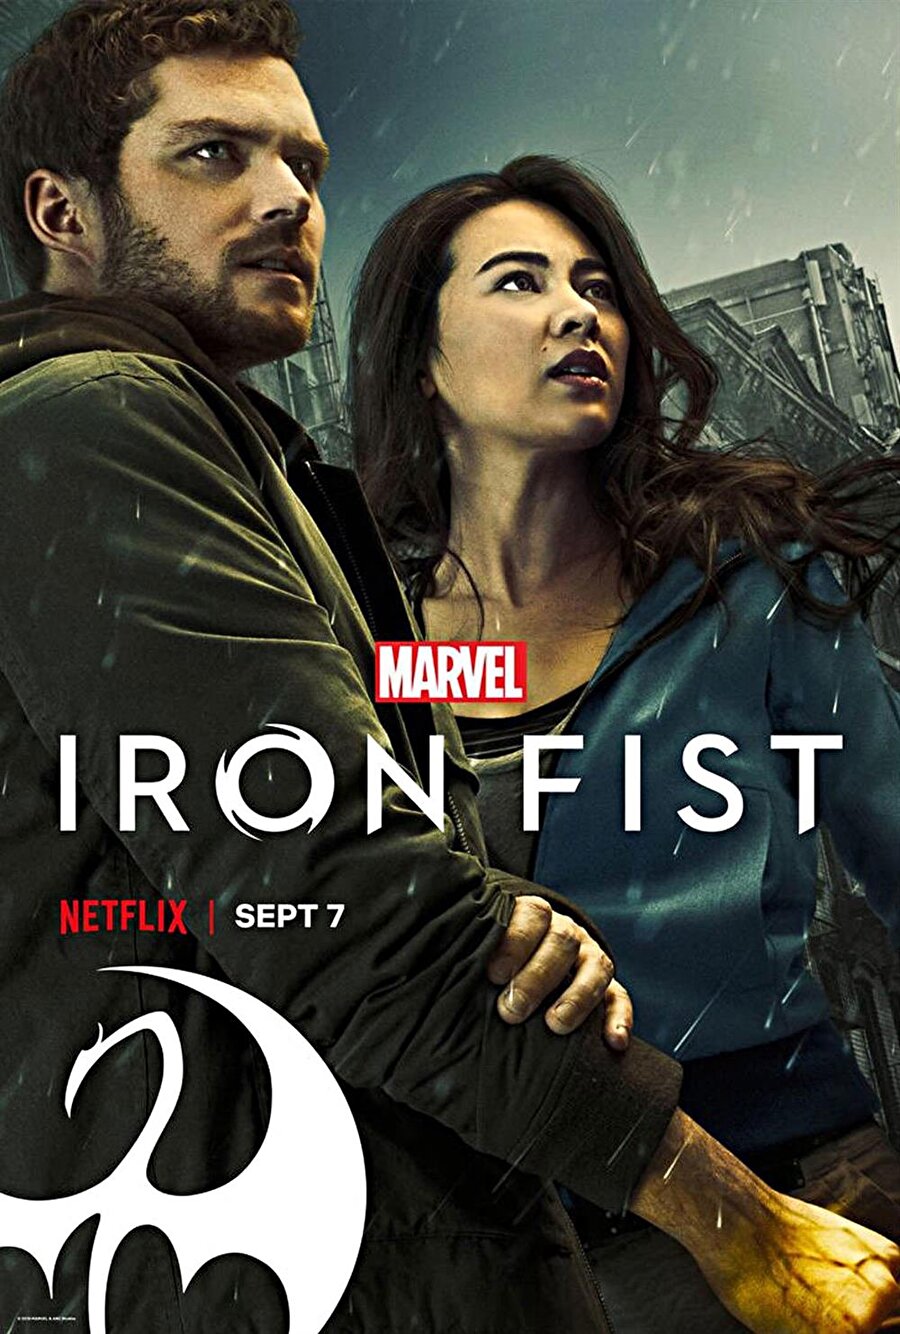 Netflix'in performansından memnun kalınmadığı için yayından kaldırılan dizisi Iron Fist'in afişi. 